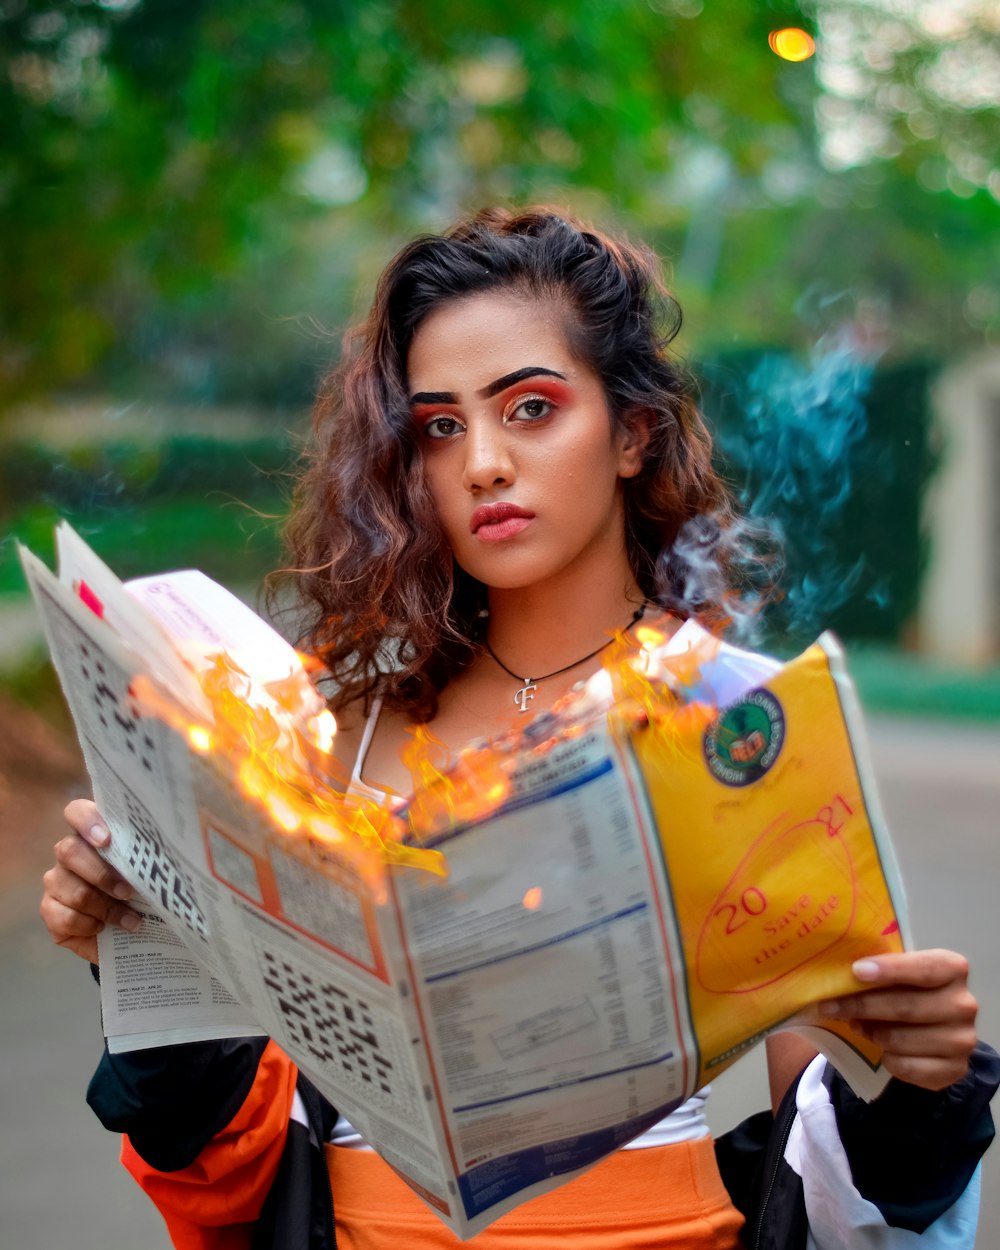 woman holding magazine while burning